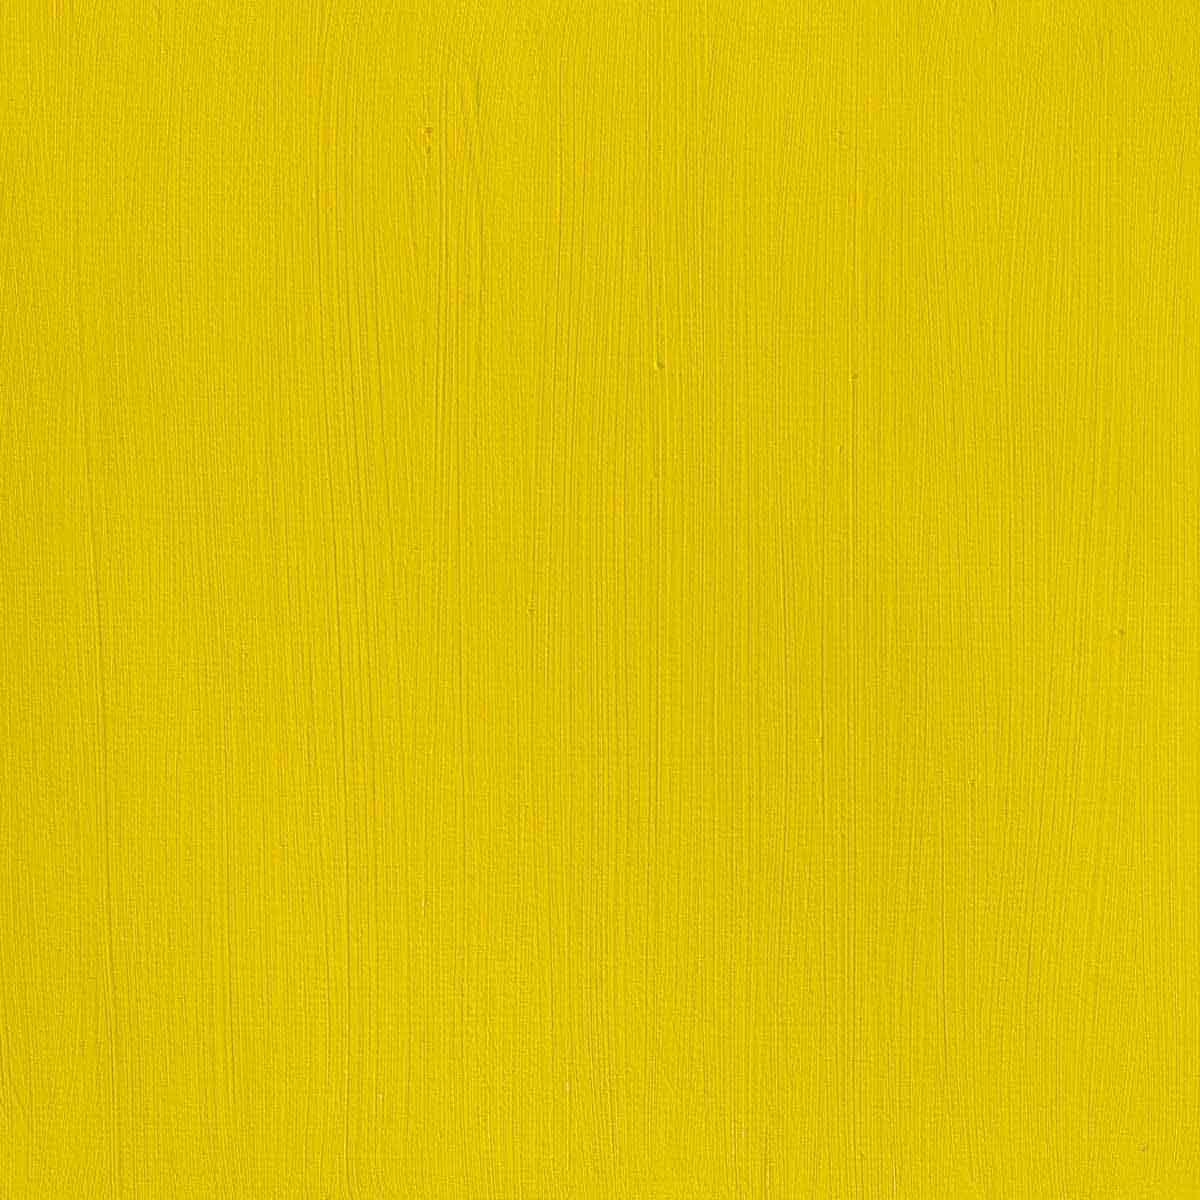 Winsor en Newton - Acrylkleur van professionele artiesten - 60 ml - Cadmium geel licht